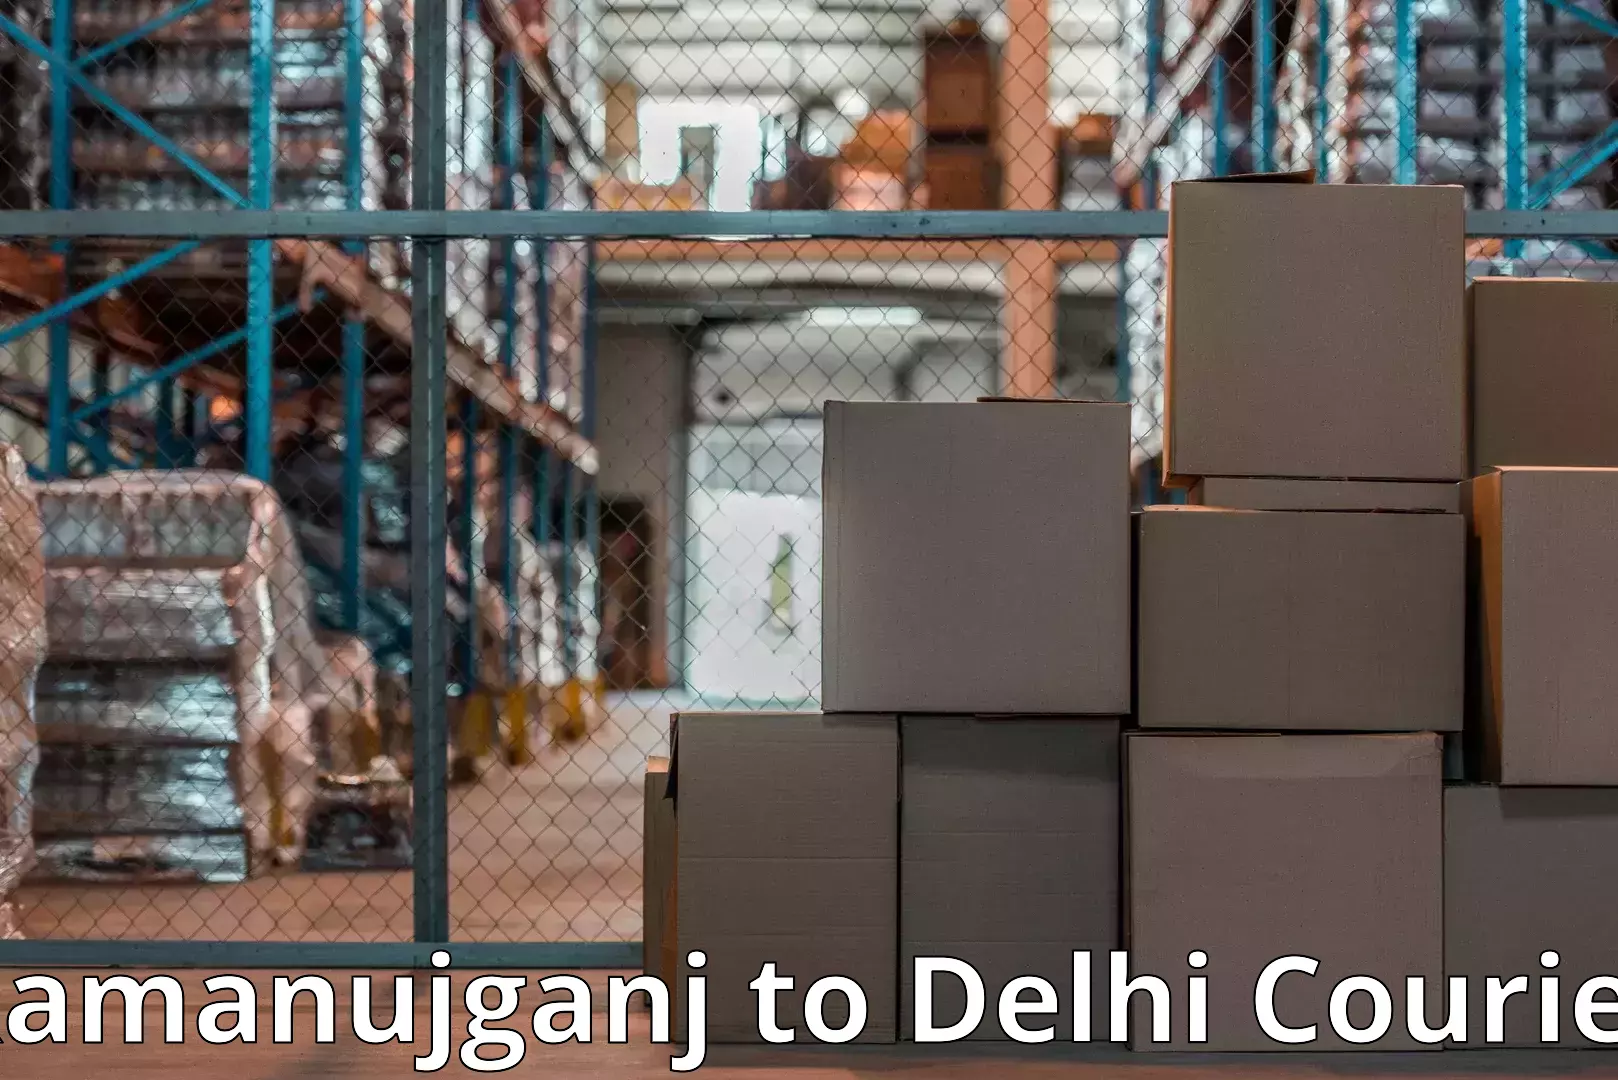 Cost-effective moving options Ramanujganj to Sarojini Nagar